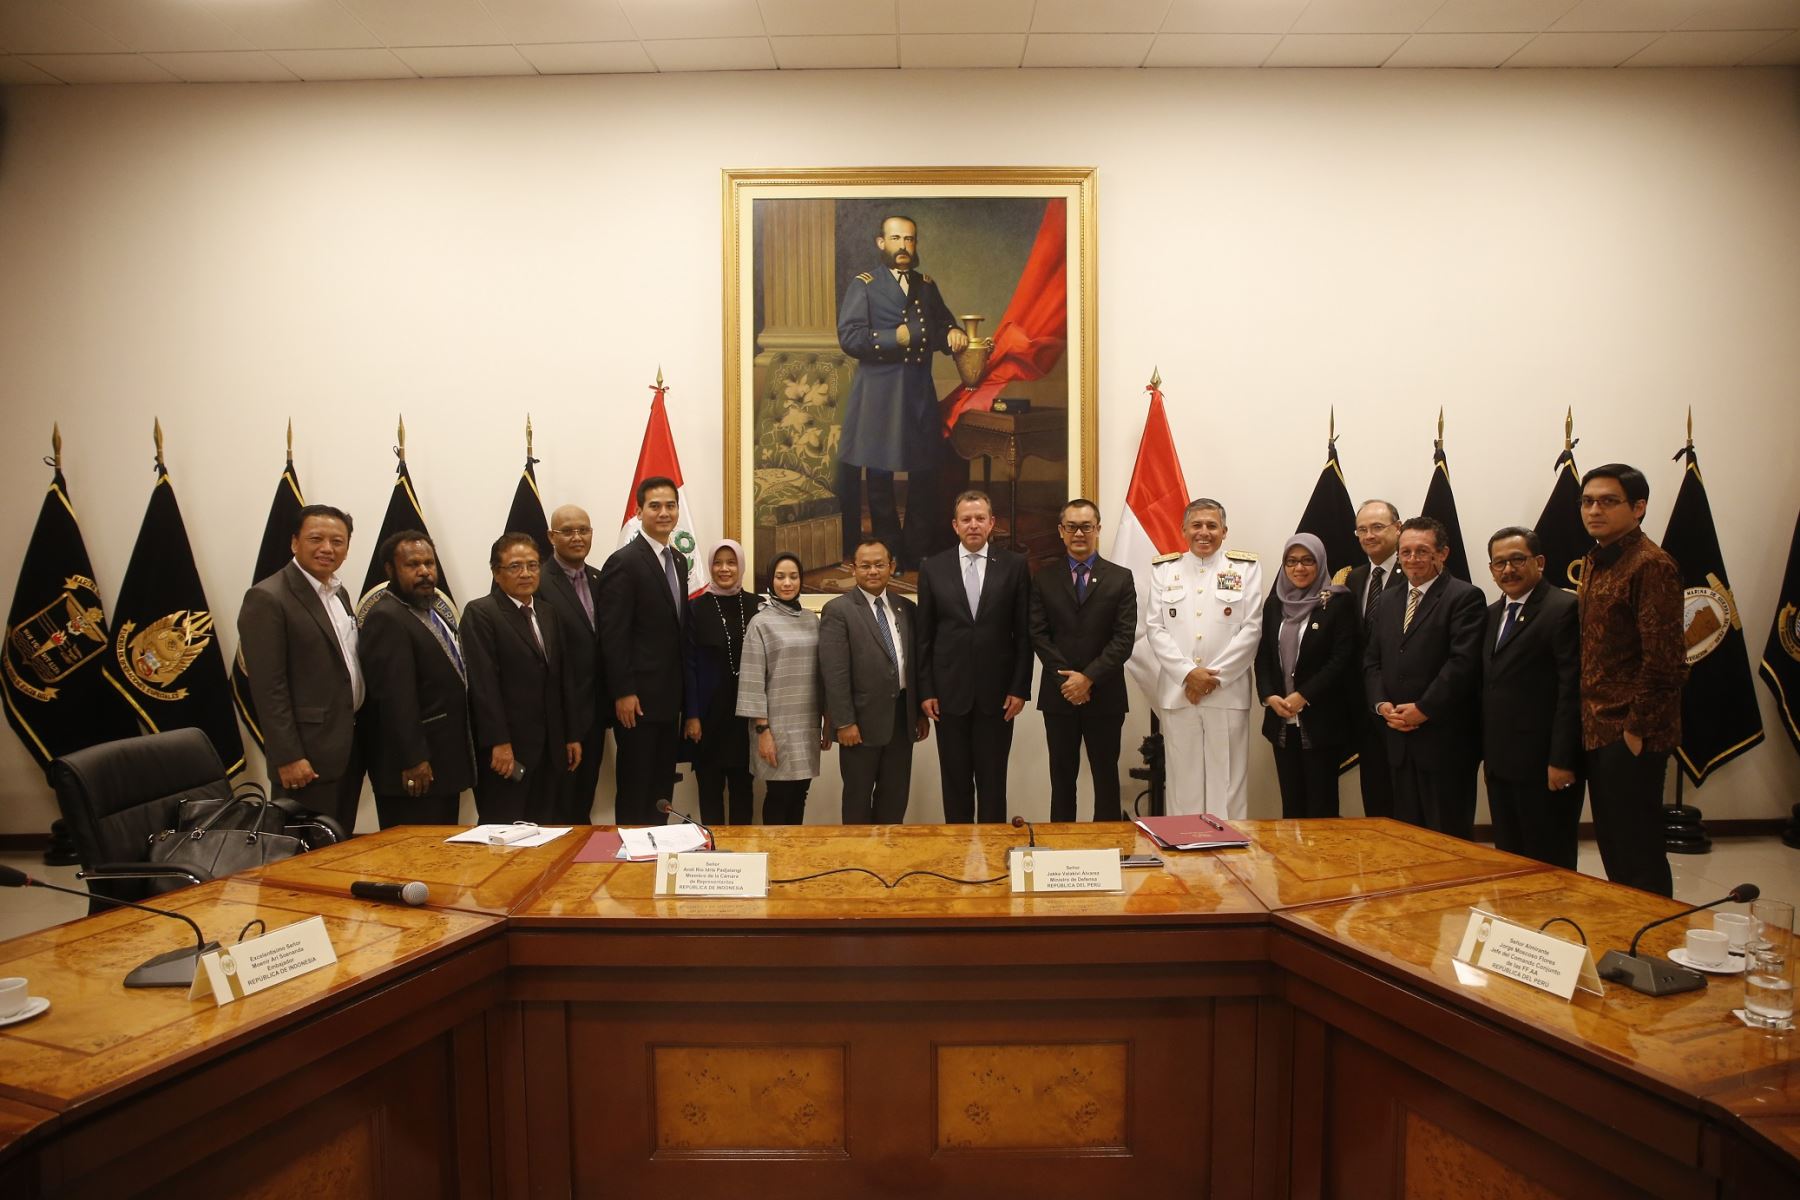 El ministro peruano de Defensa, Jakke Valakivi, se reunión con el presidente de la Comisión de Defensa y Relaciones Exteriores de la Cámara de Representantes del país asiático, Andi Rio Idris Padjalangi.Difusión